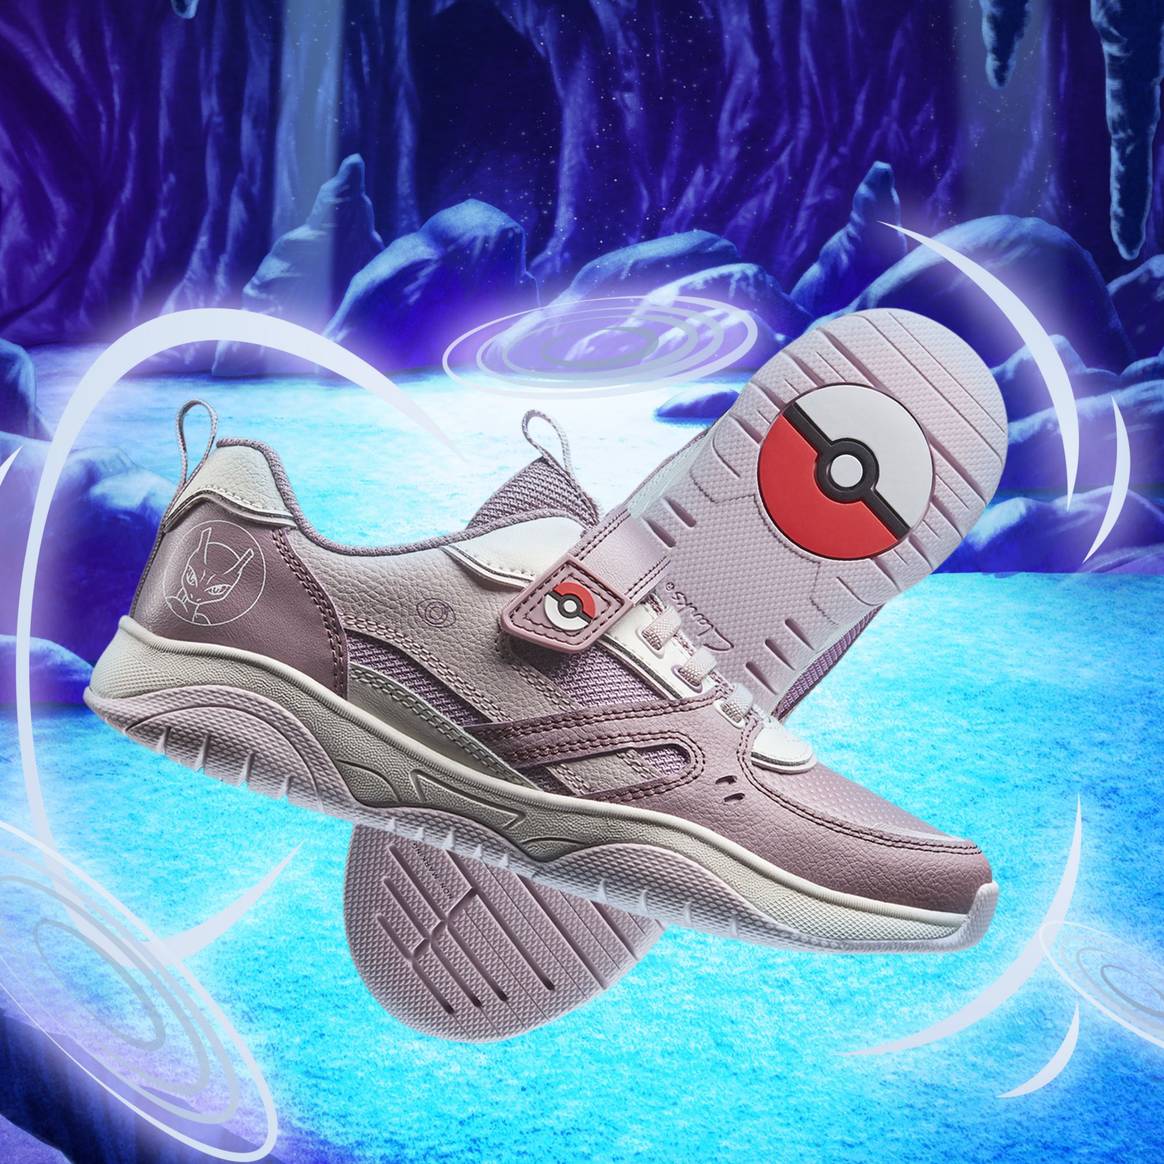 Image: Pokémon x Clarks